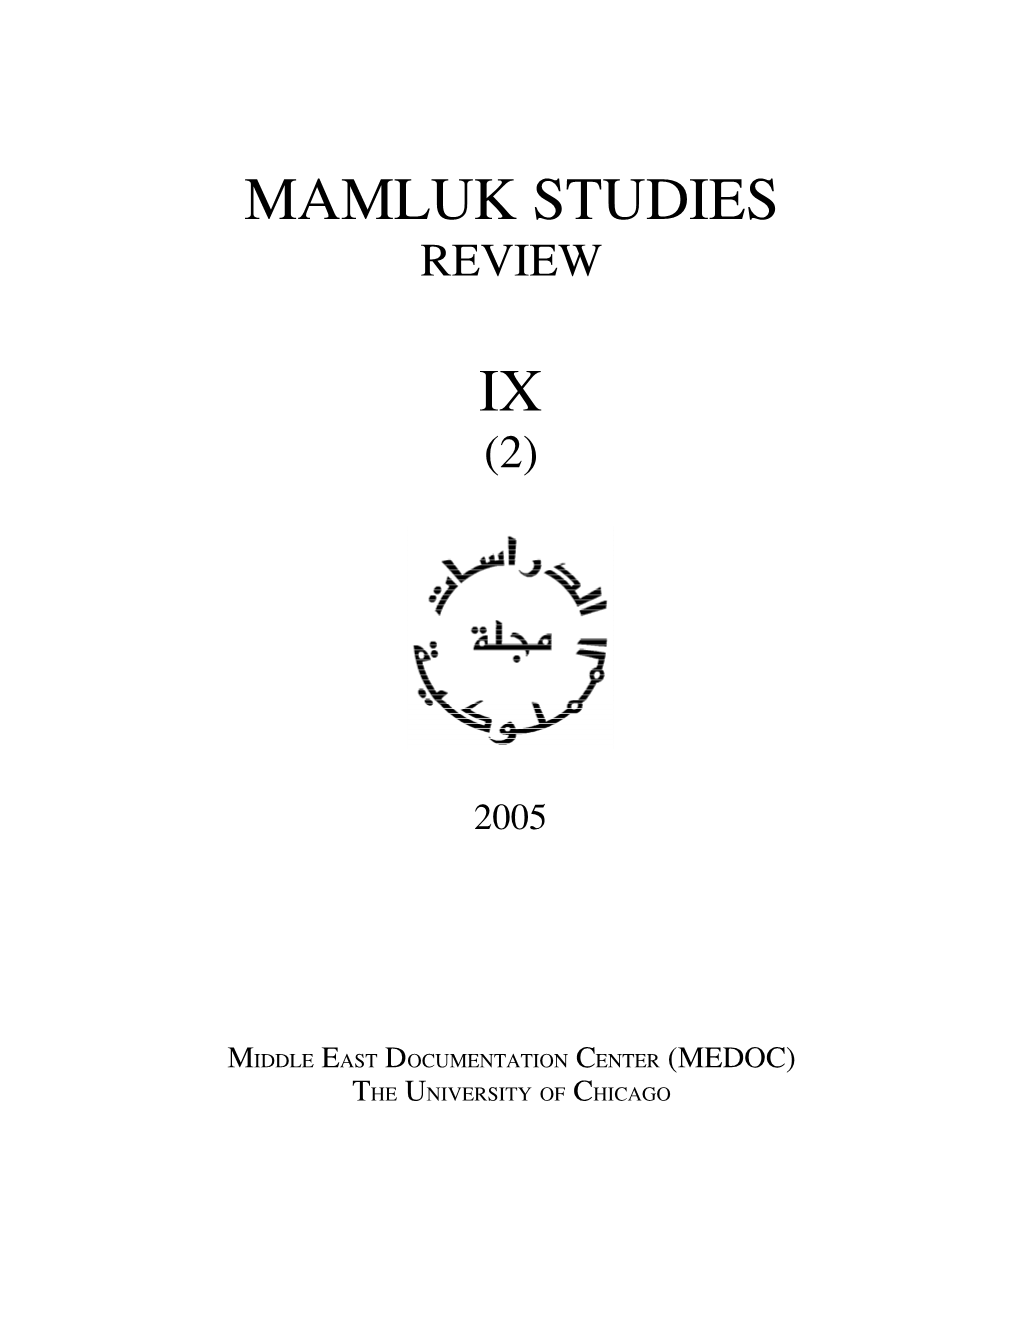 Mamluk Studies Review Vol. IX, No. 2 (2005)